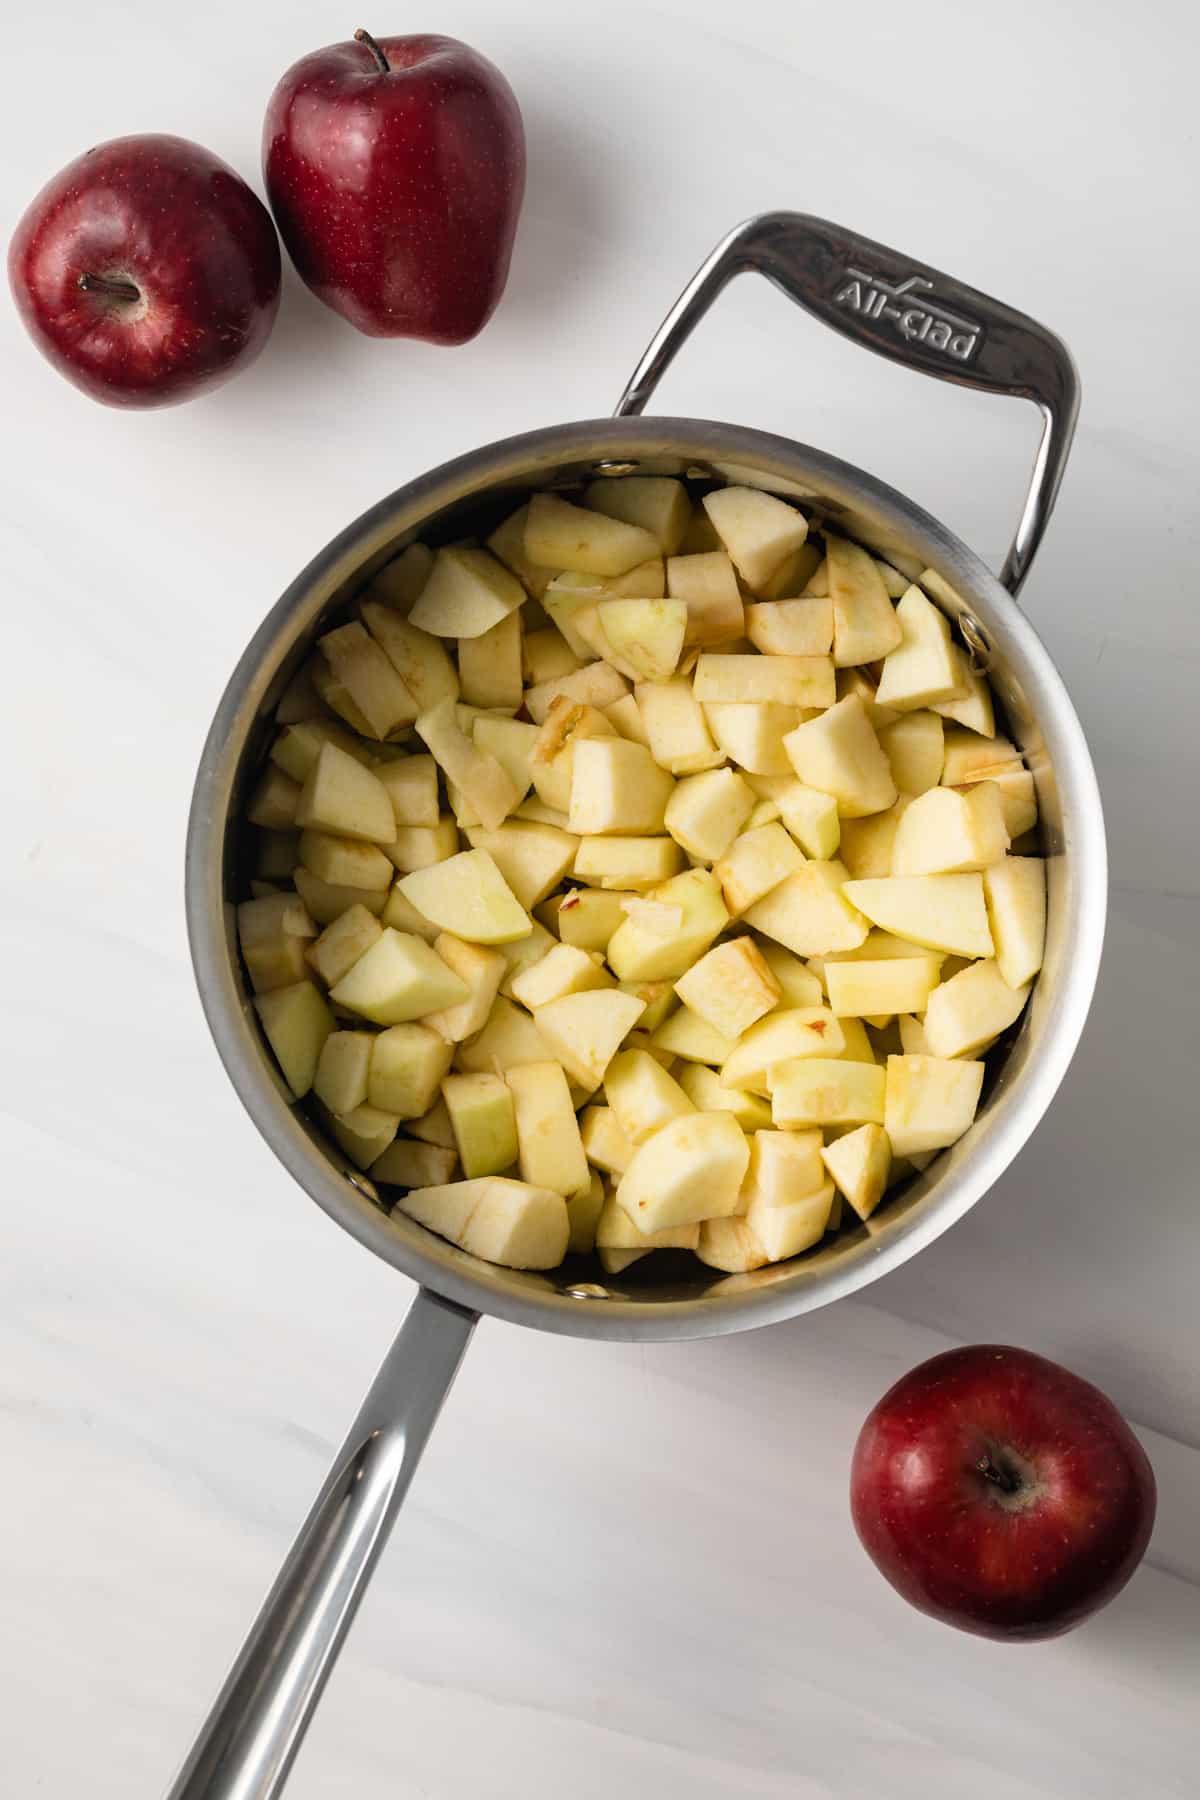 Diced apples in saucepan.